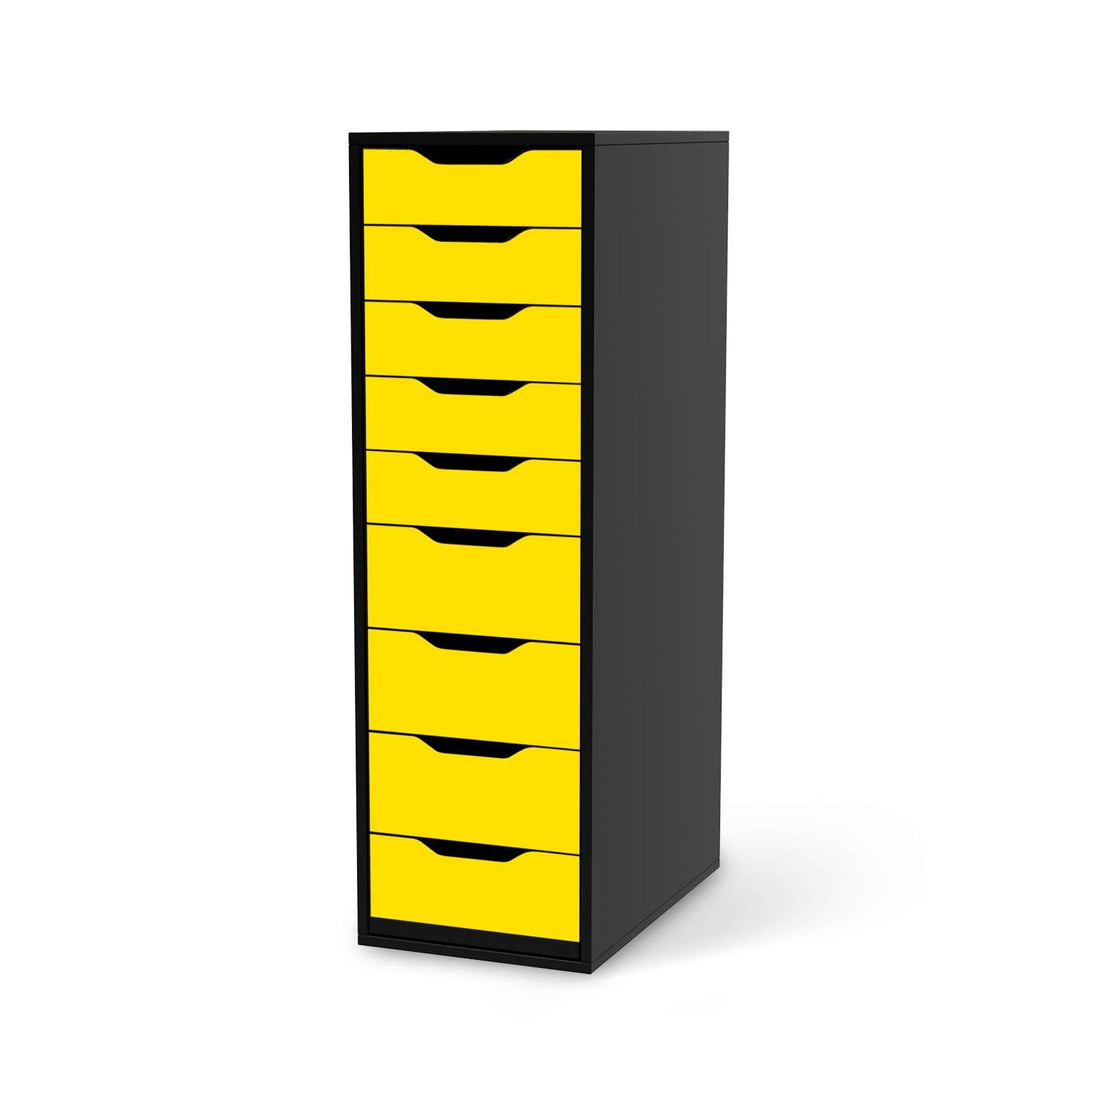 Folie für Möbel Gelb Dark - IKEA Alex 9 Schubladen - schwarz